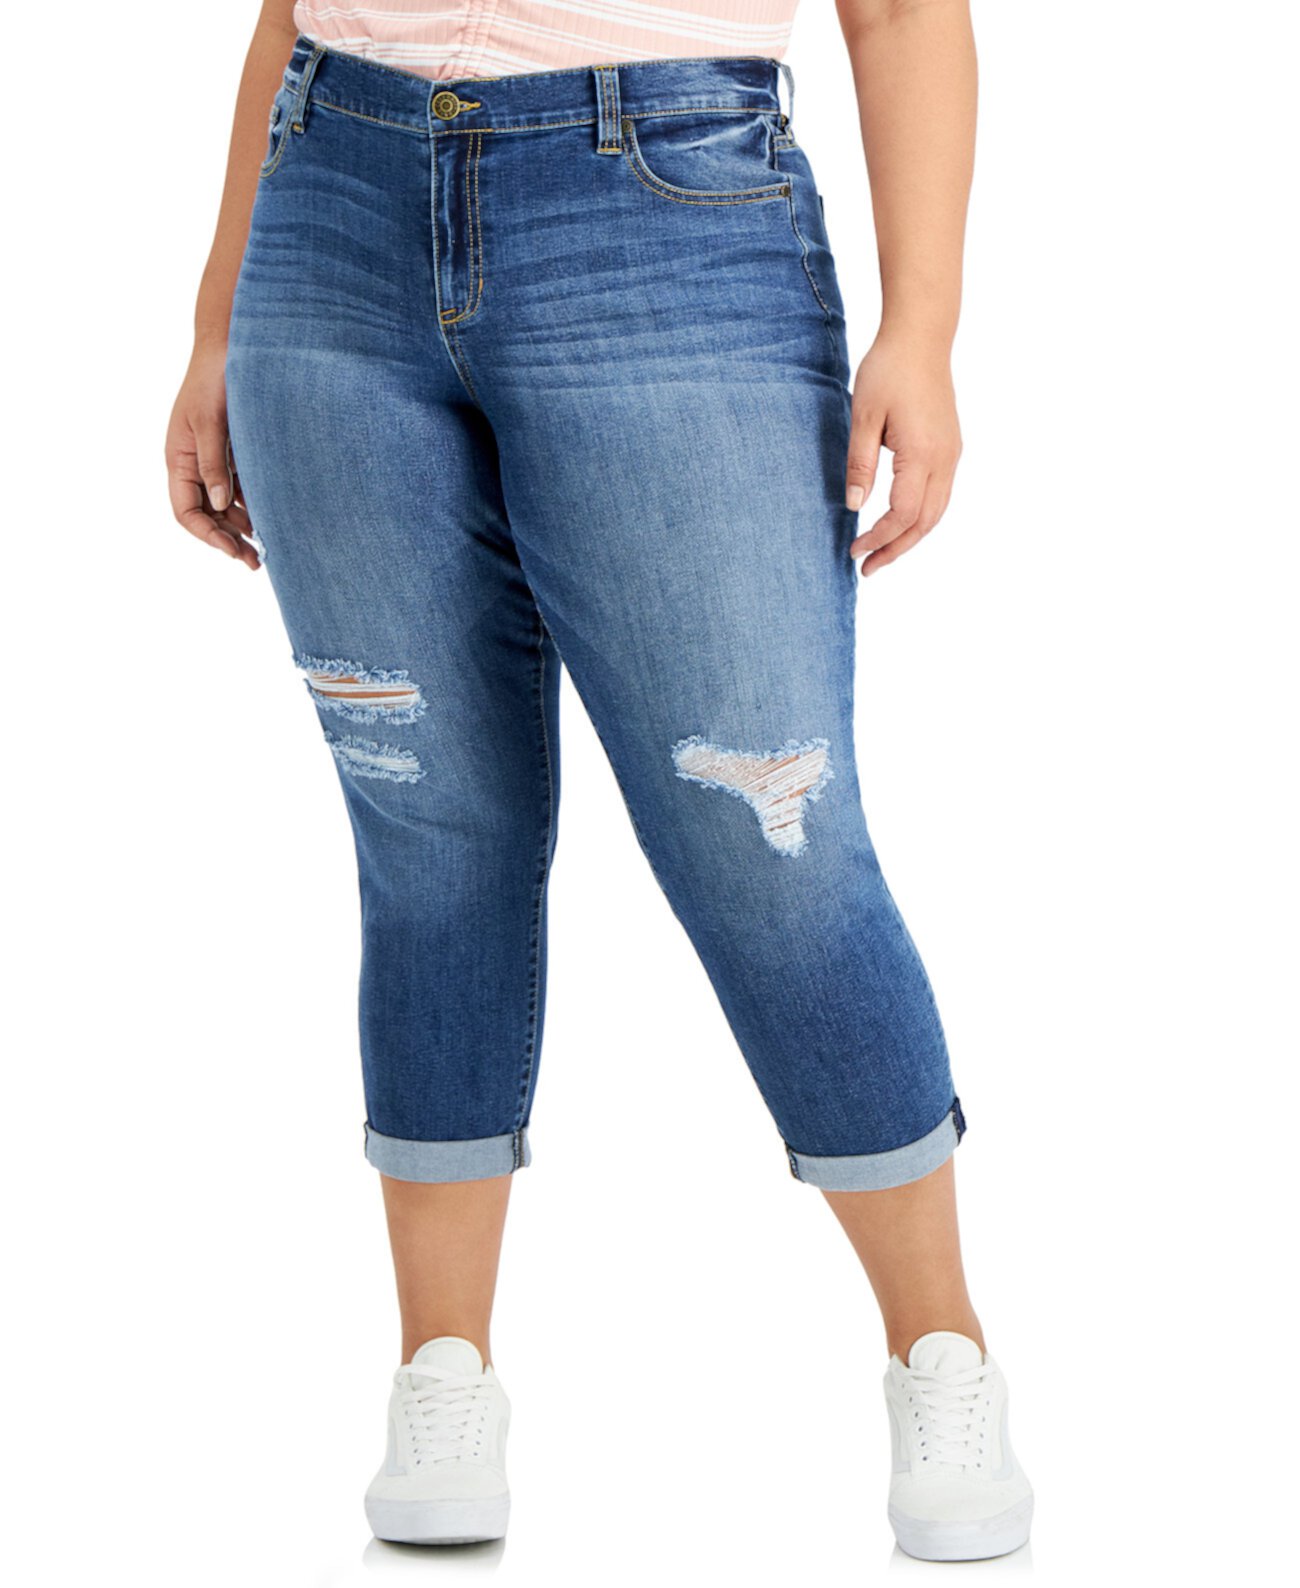 Модные джинсы для девочек больших размеров с разрушенными рукавами Celebrity Pink